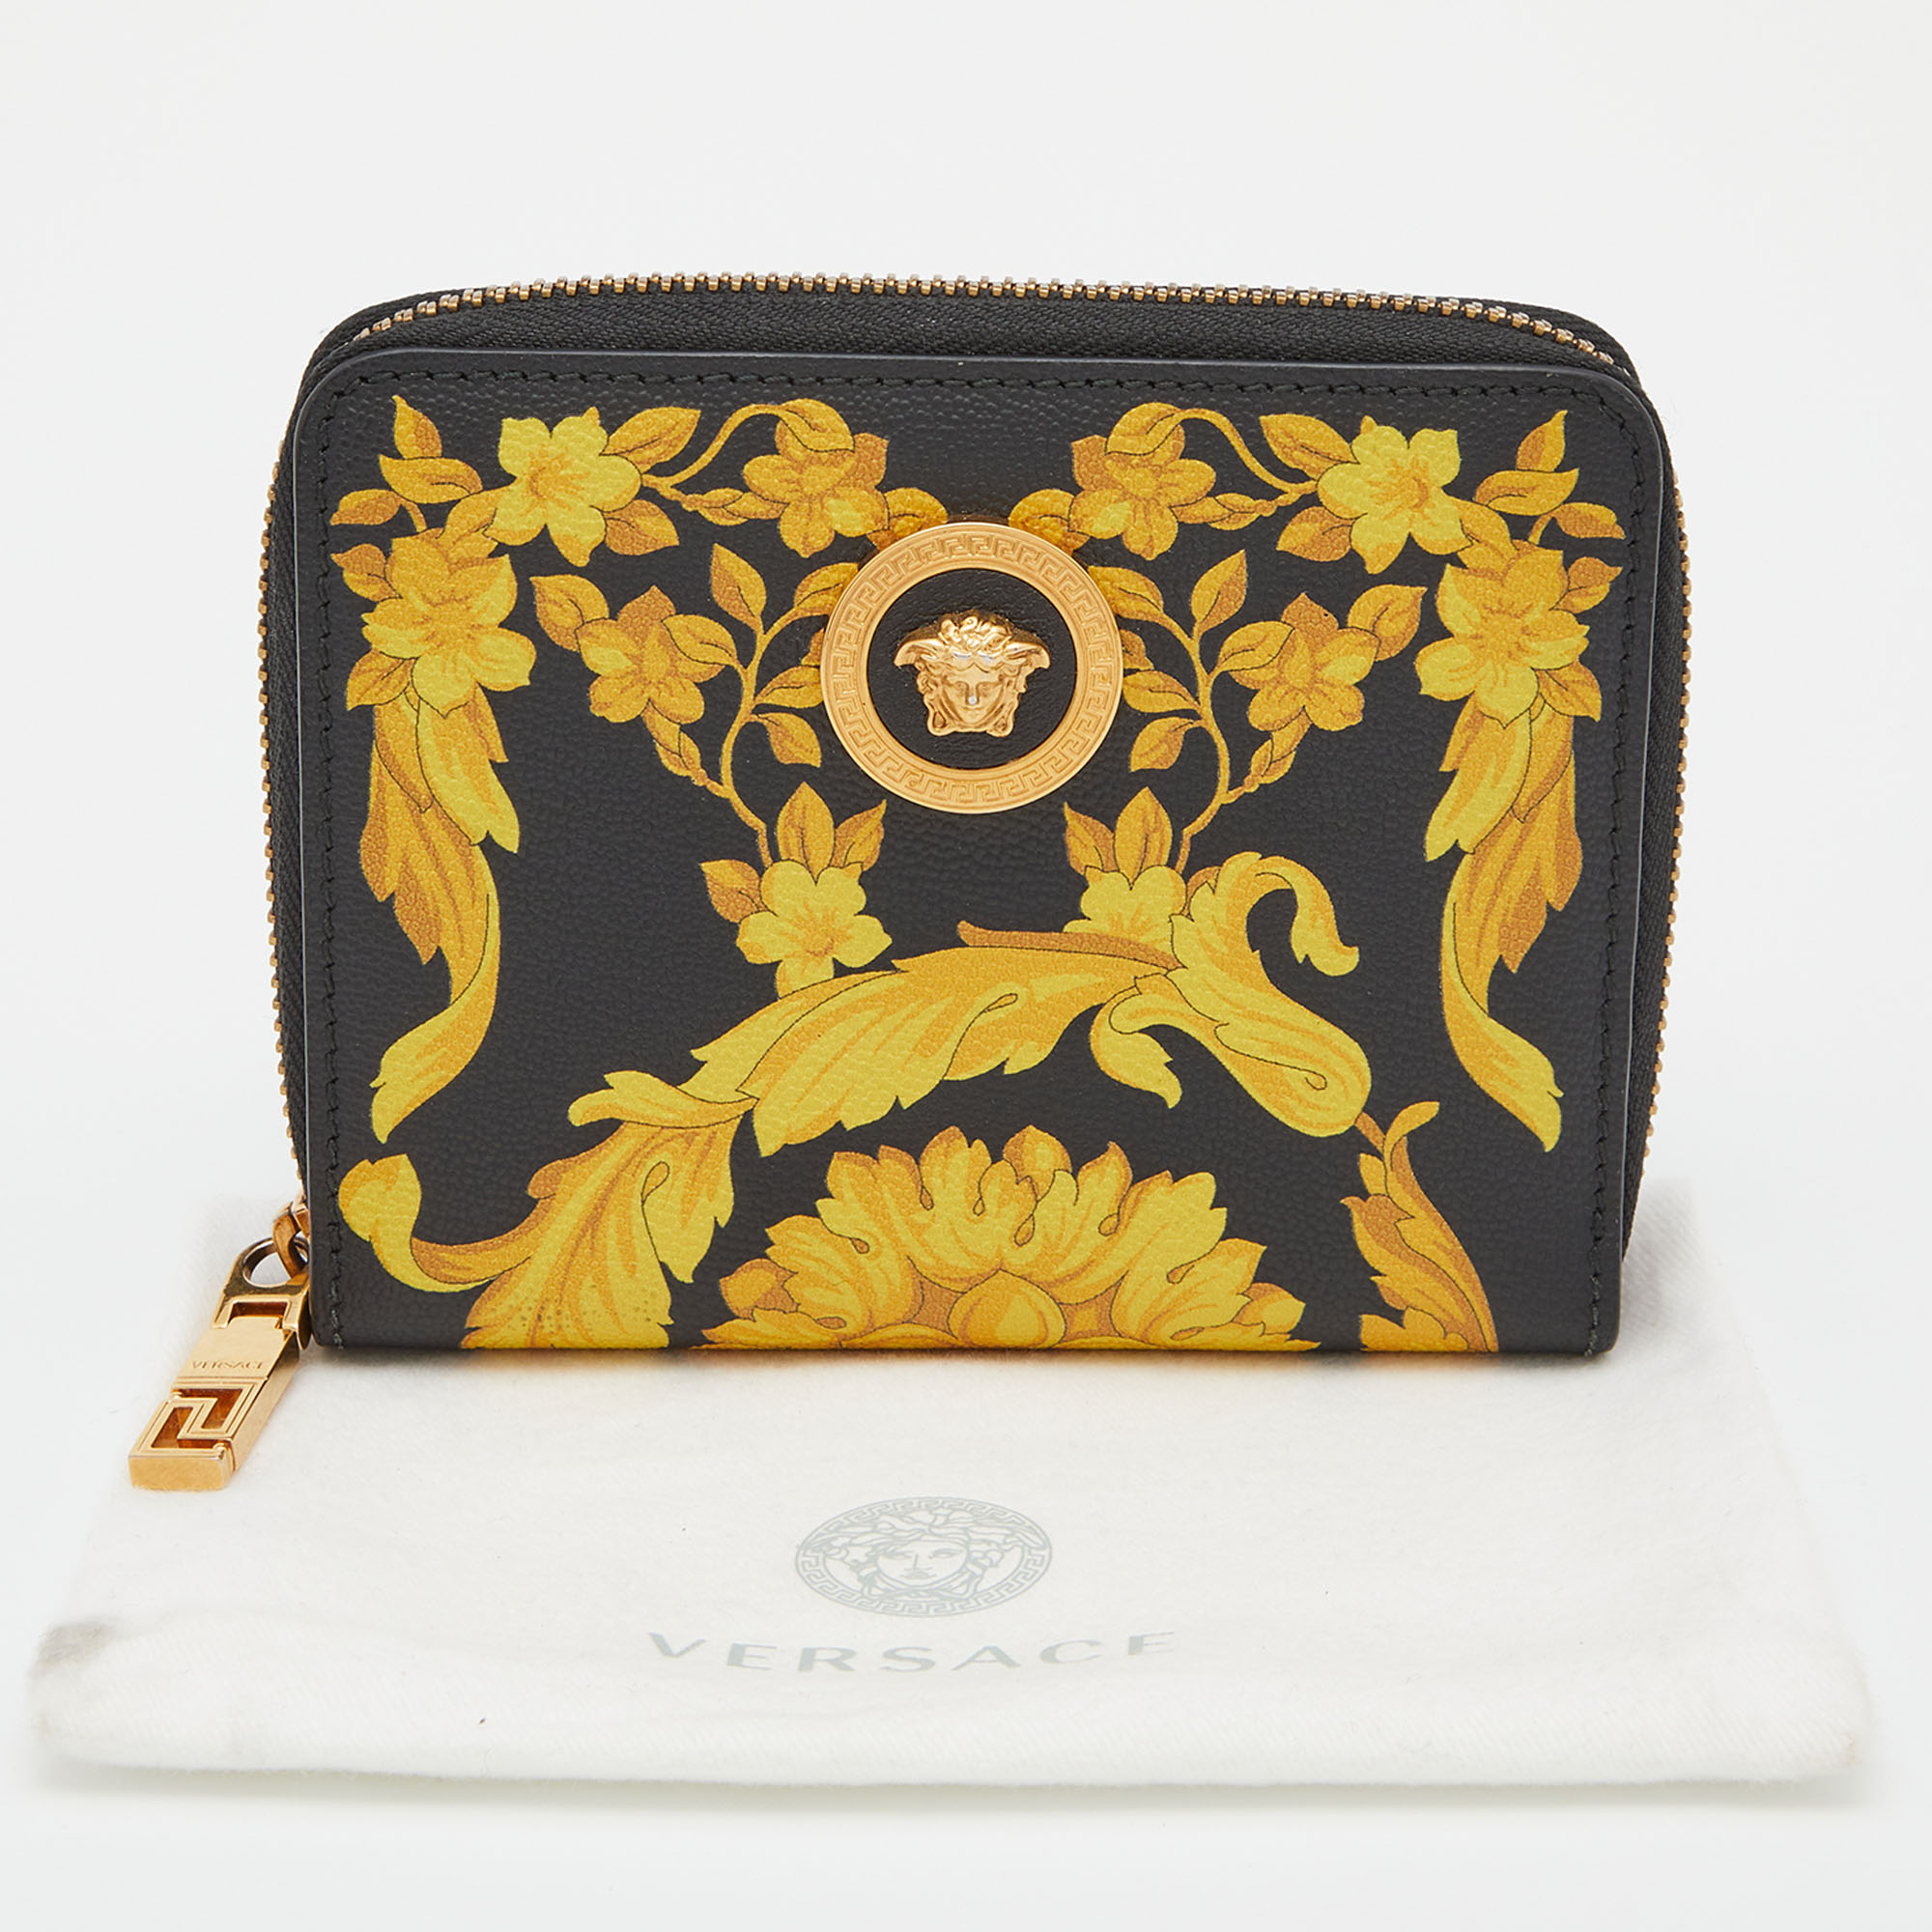 Versace Black/Yellow Baroque Print Coated Canvas Zip Around Wallet